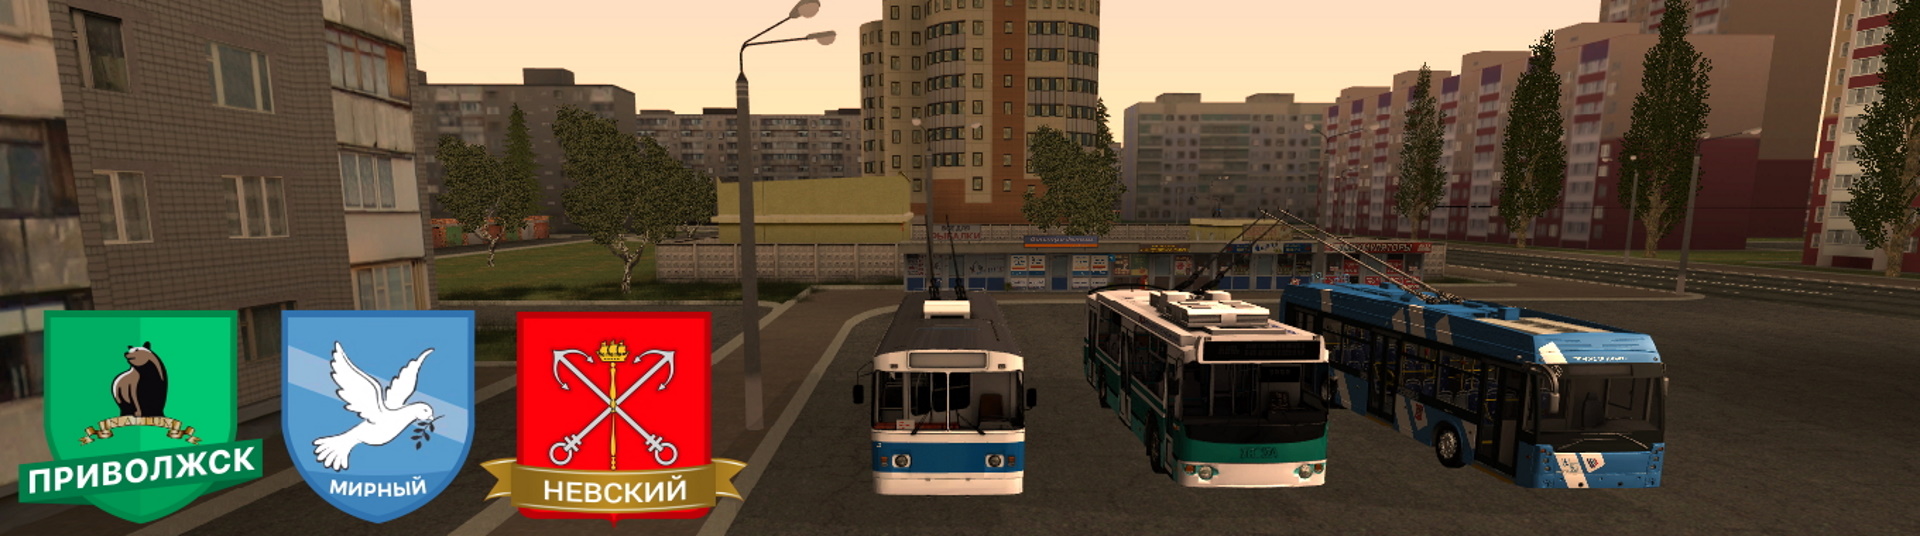 Какой самый прибыльный маршрут на трамвае в мта провинция